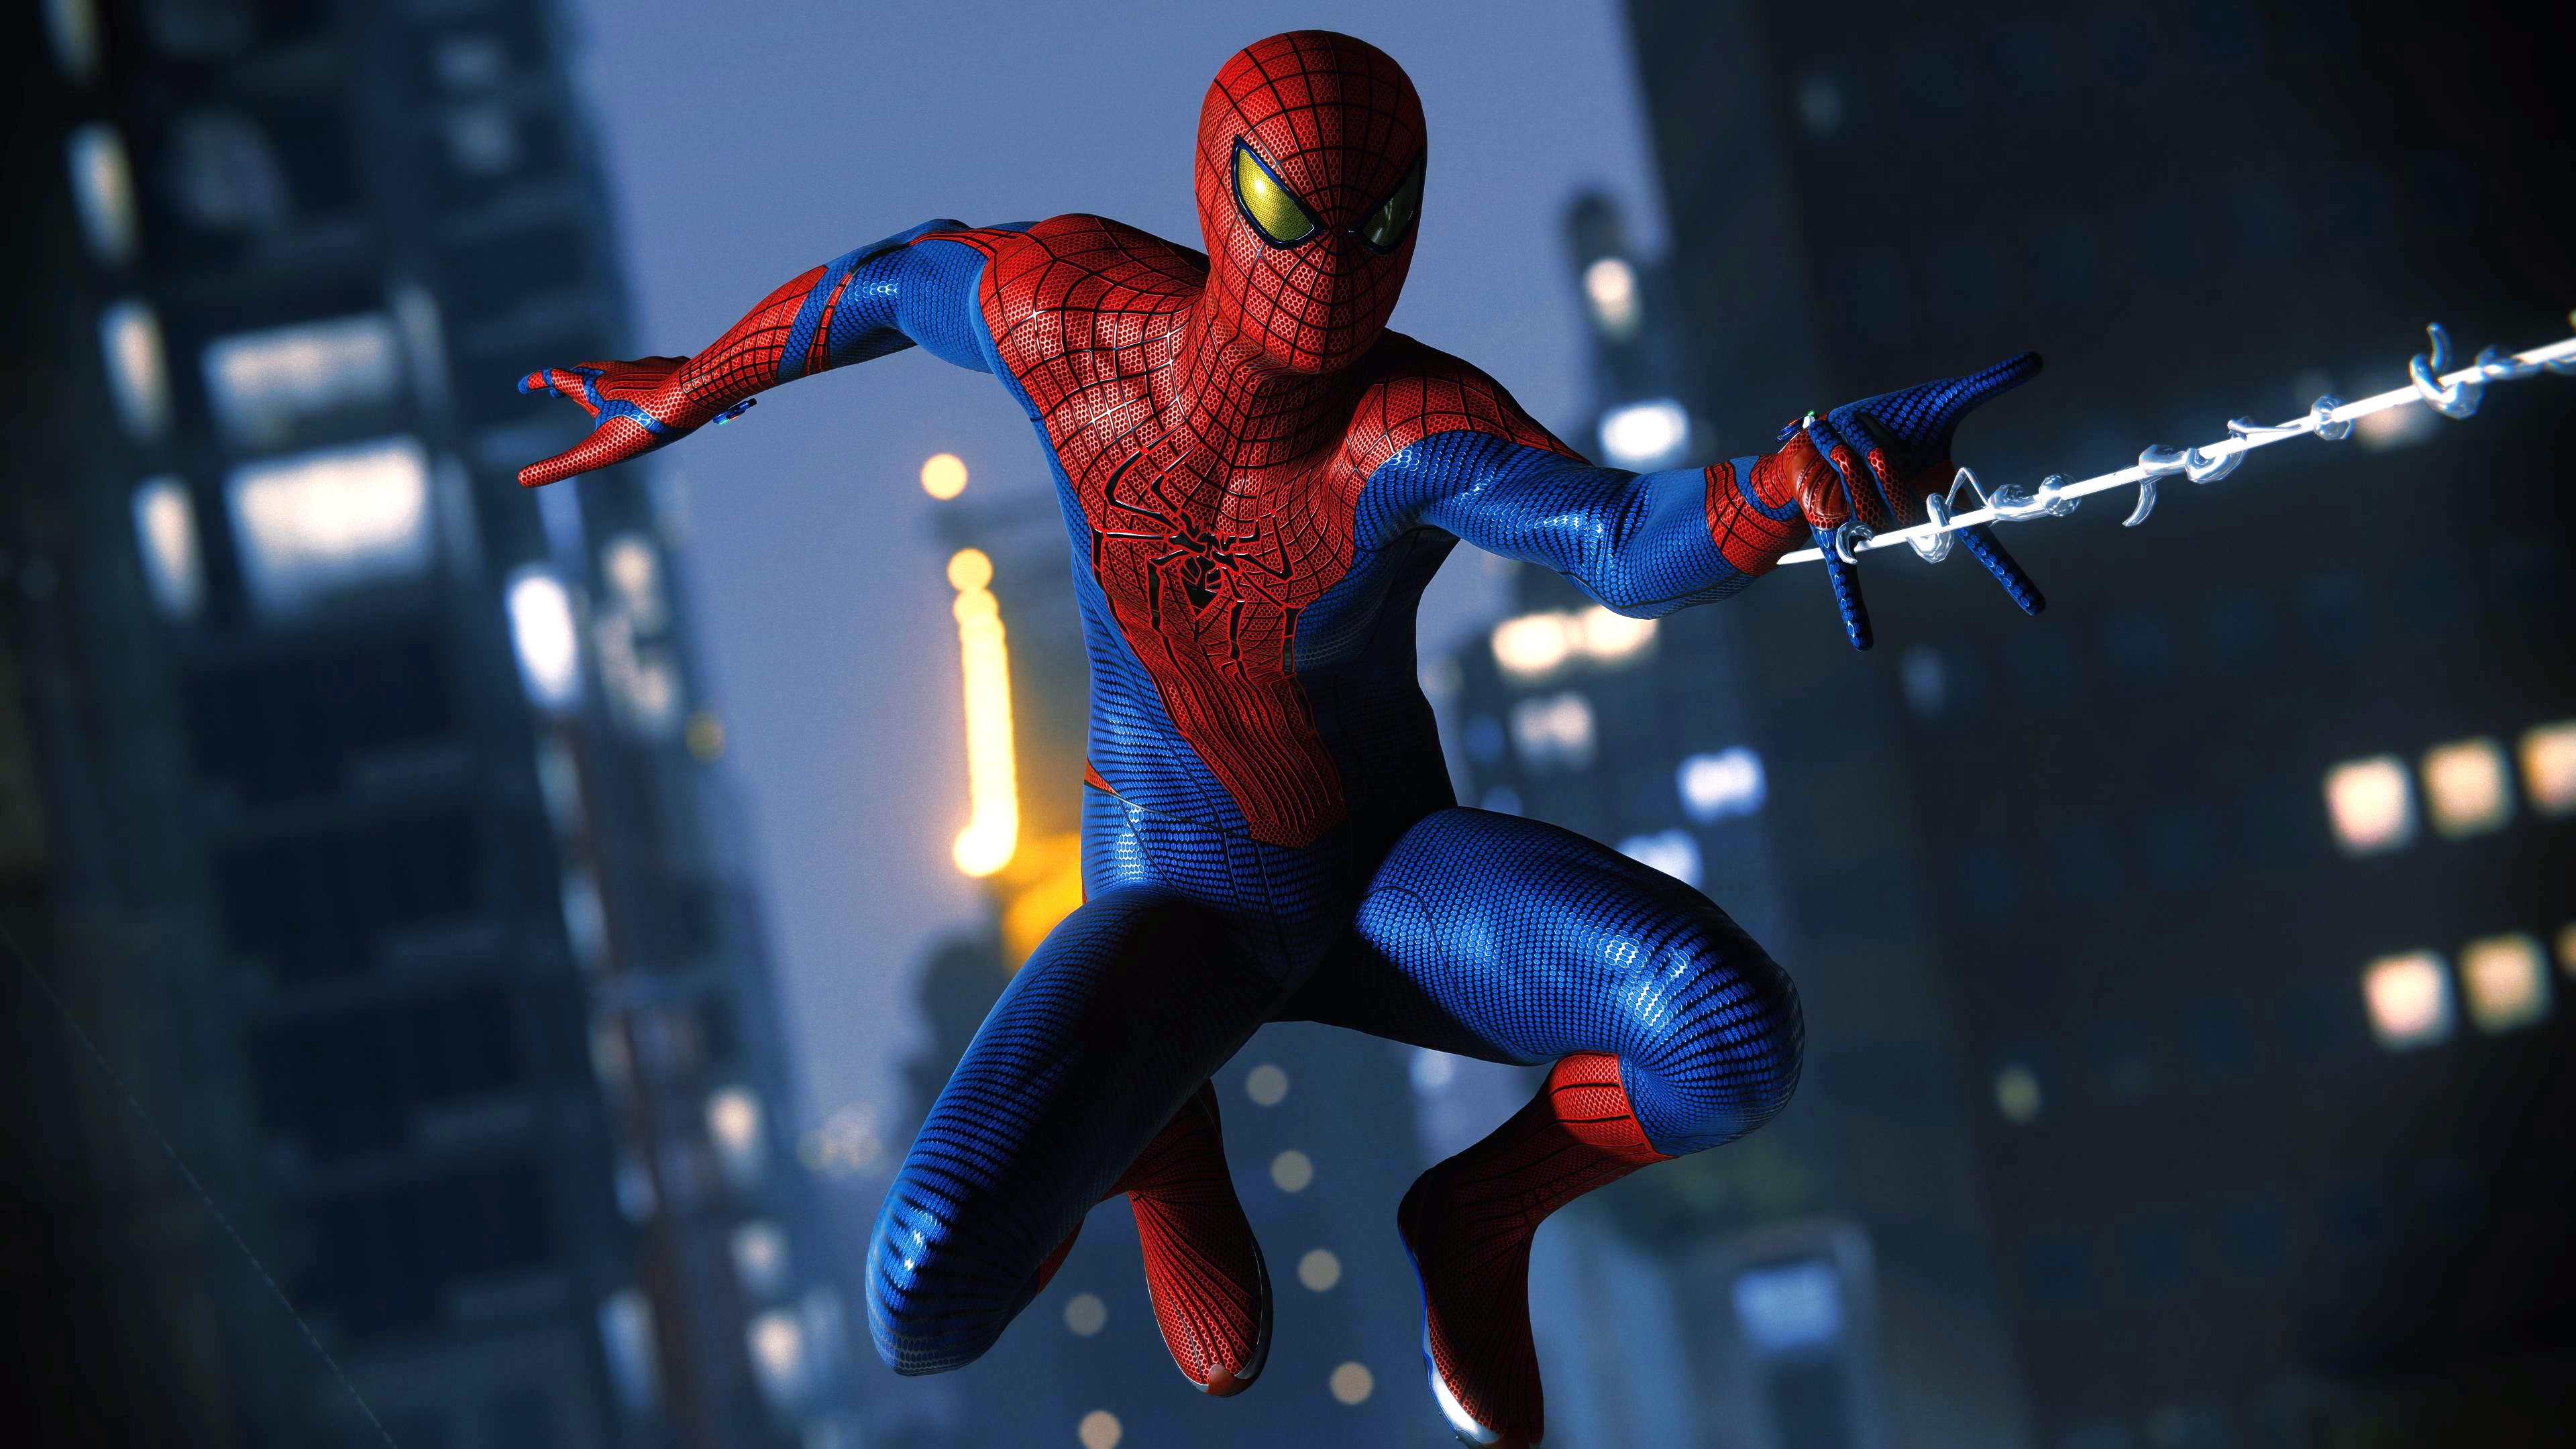 Spider Man 2018 Spider Man Amazing Spider Man Video Game Art 3840x2160